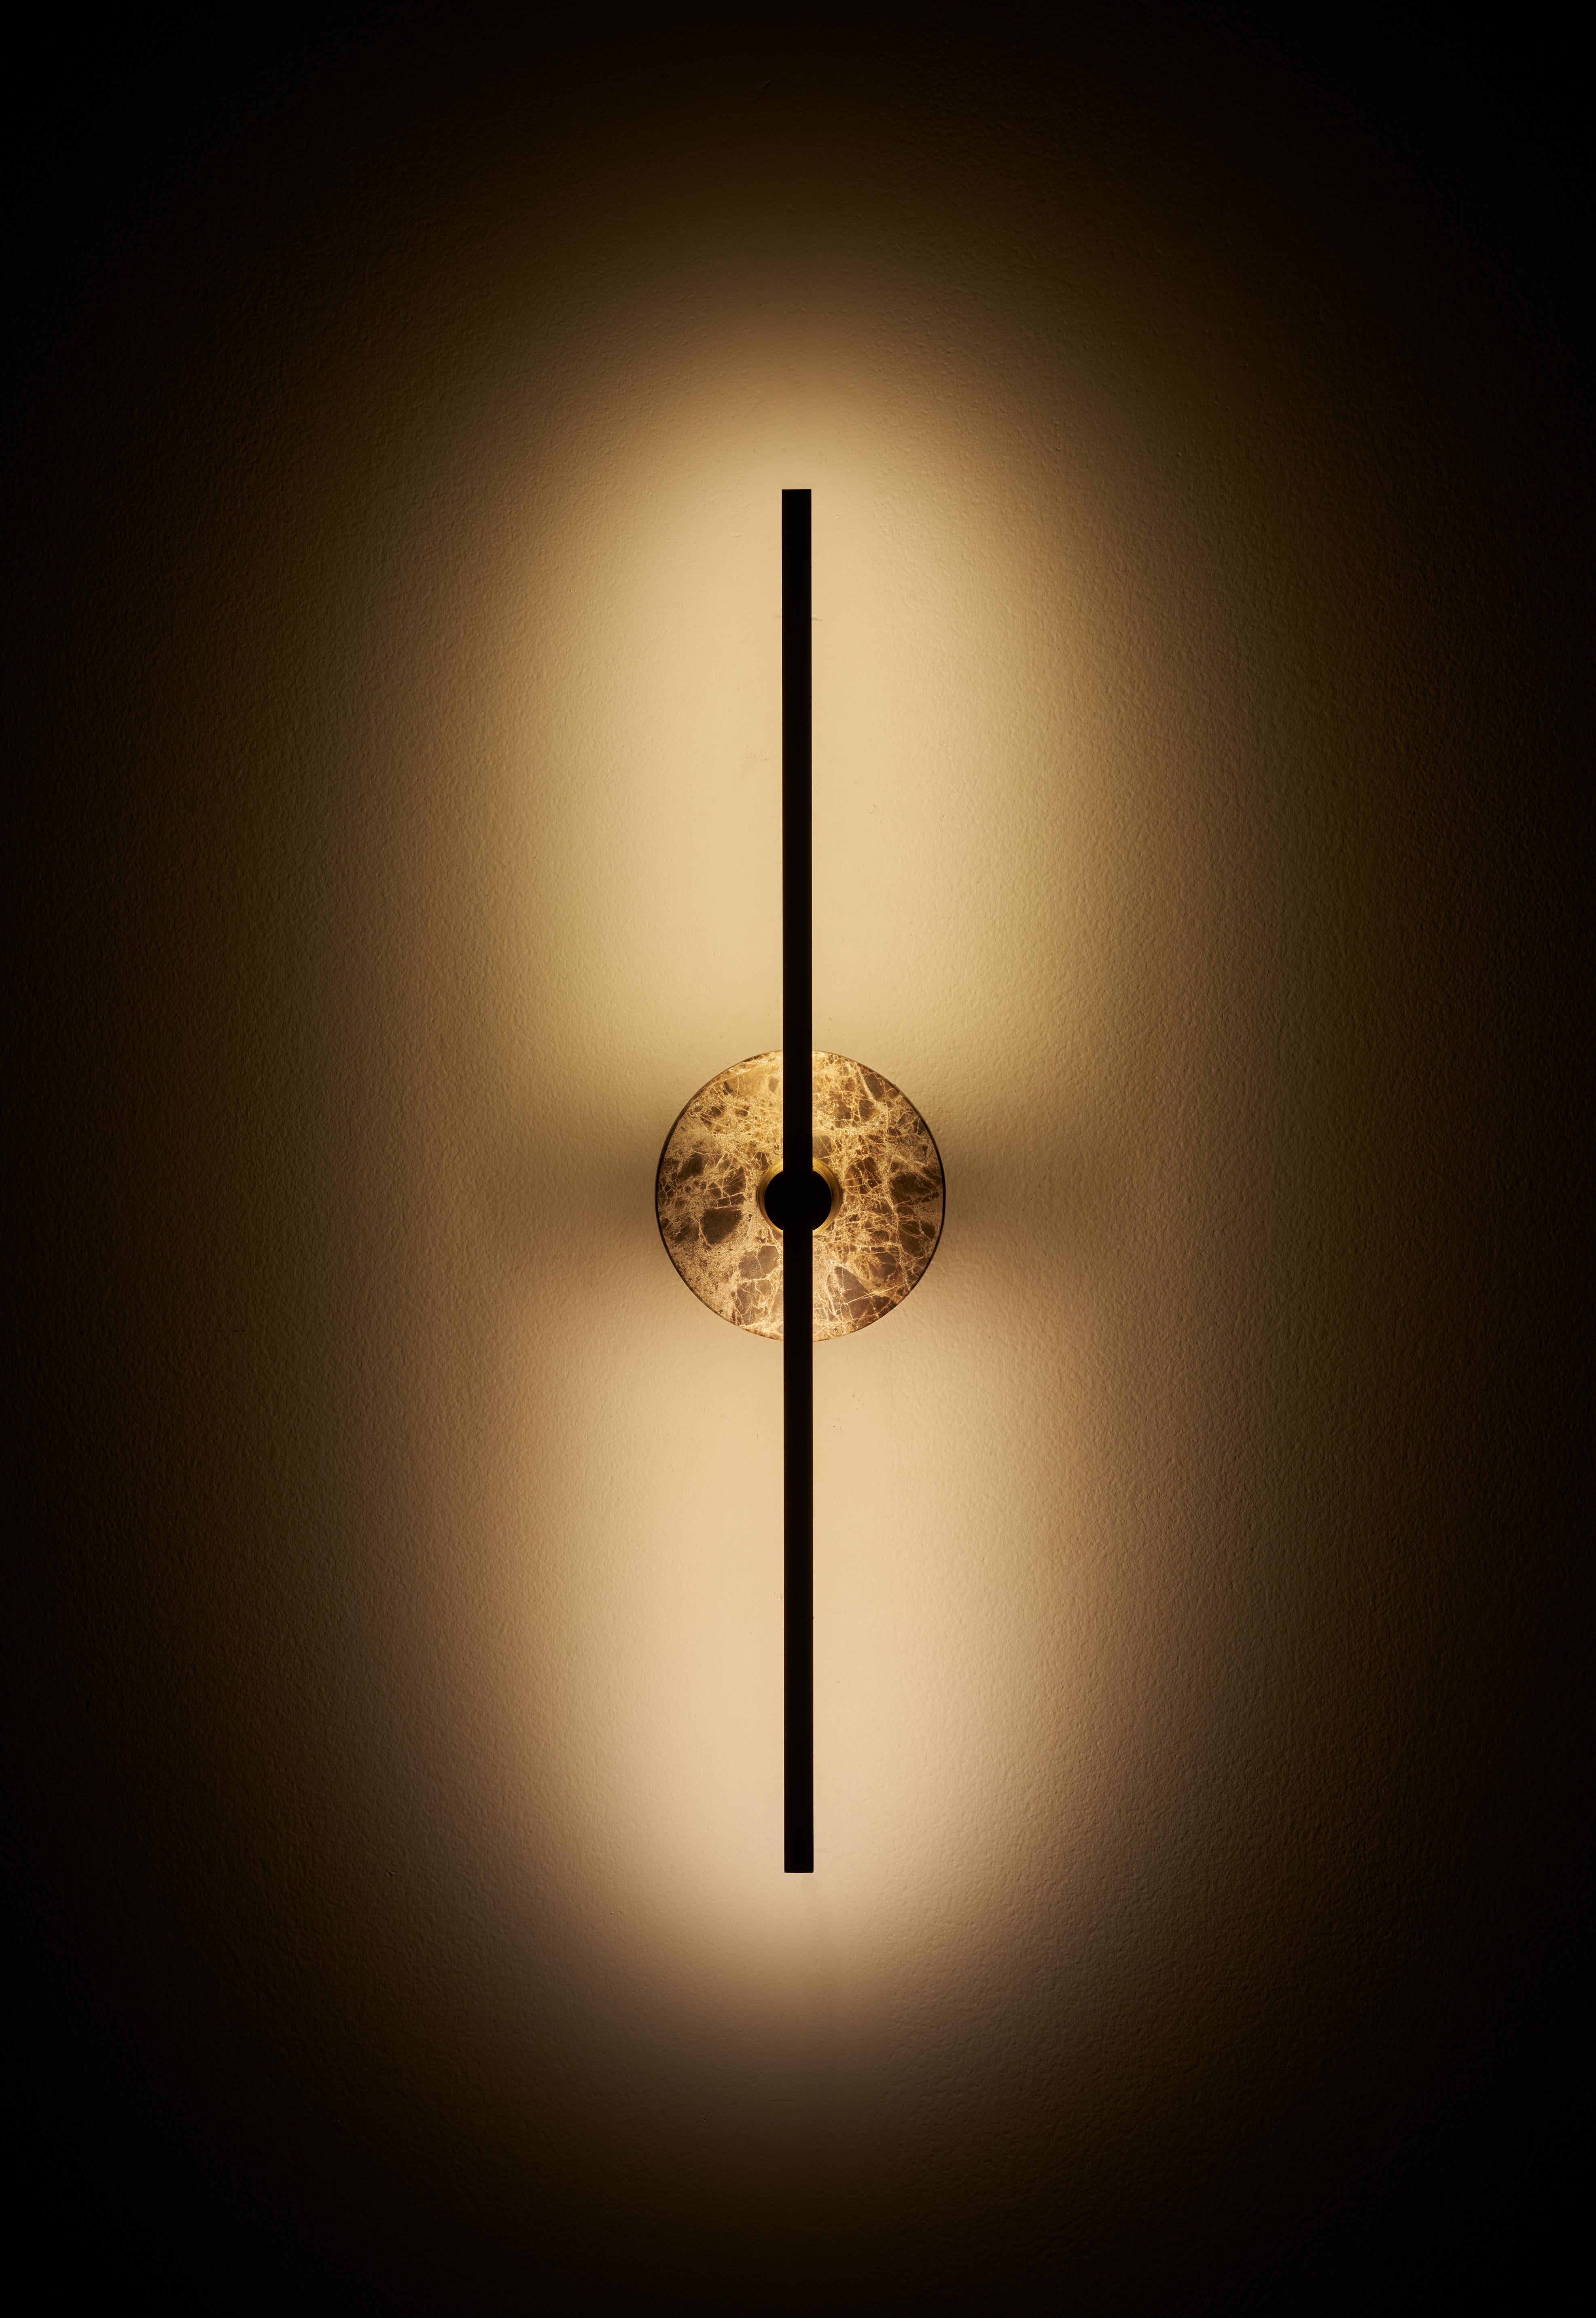 Die Stick-Wandleuchte ist eine moderne Leuchte mit minimalistischem Design, dünnen Messingprofilen und moderner LED-Technologie. Sie strahlt ein warmes und diffuses Licht aus, das jedem Raum eine gemütliche und einladende Atmosphäre verleiht.

Der